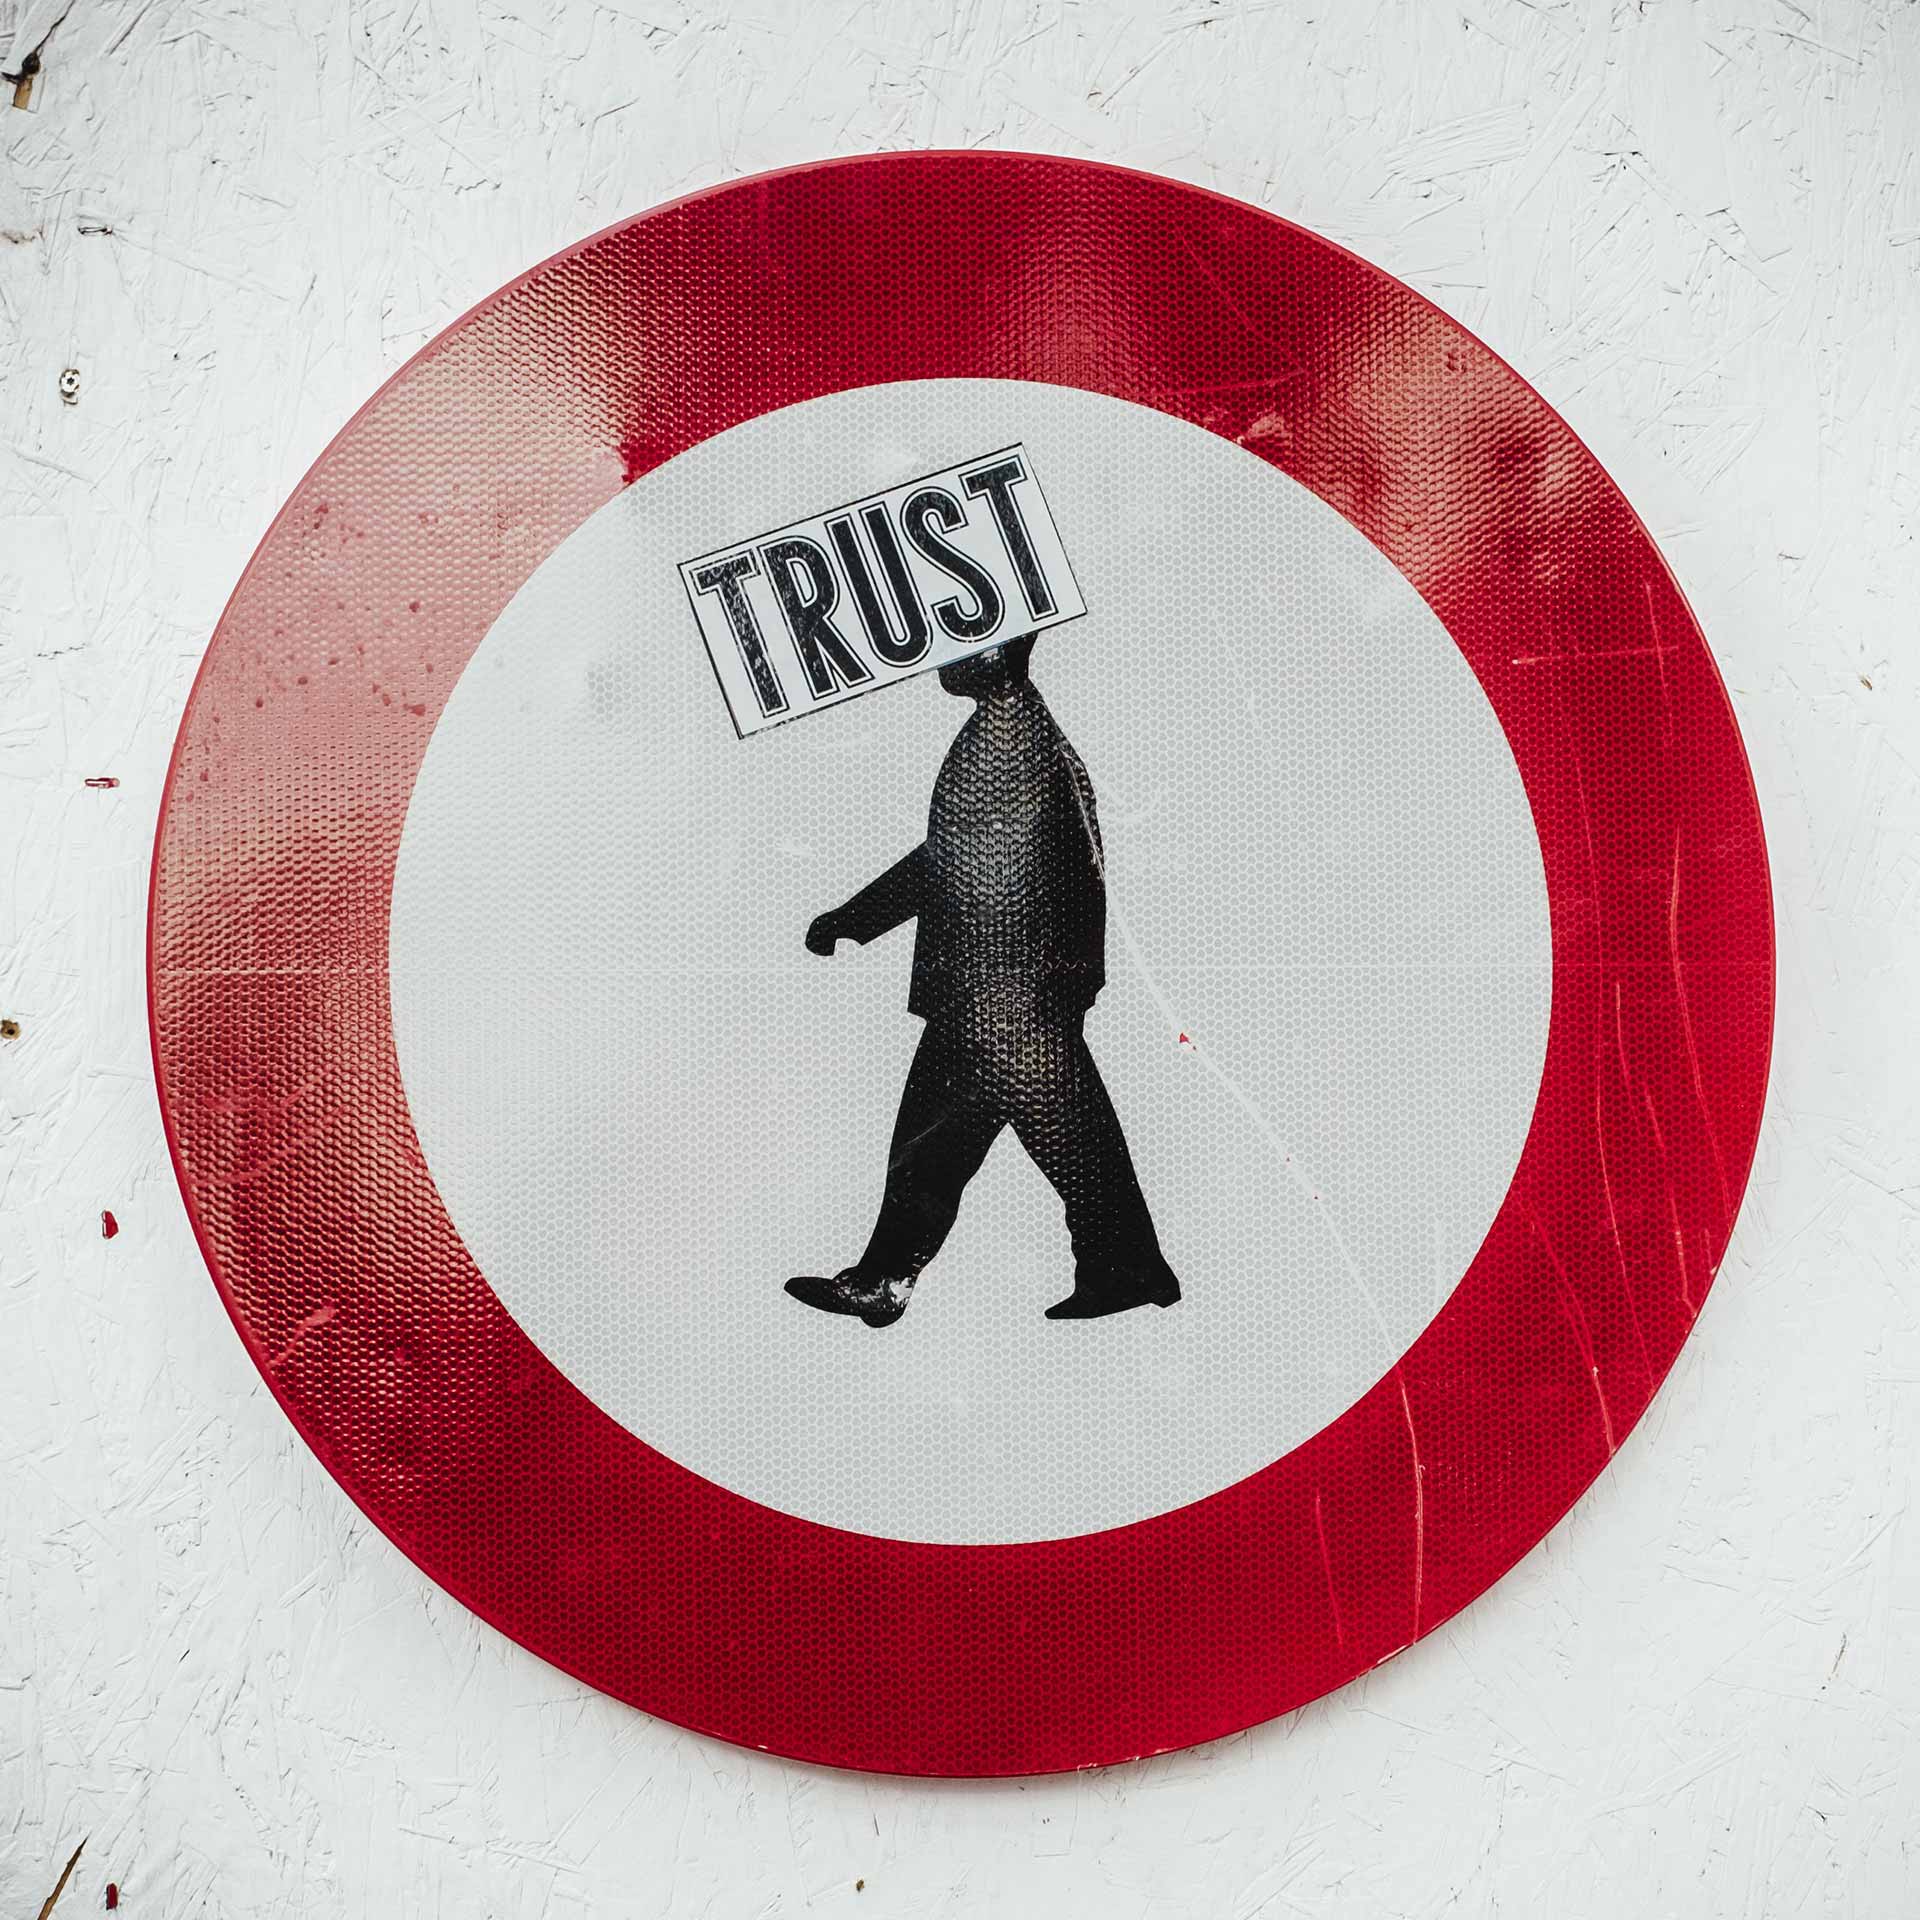 Vertrauen und Leichtgläubigkeit: Schild mit Trust Aufkleber